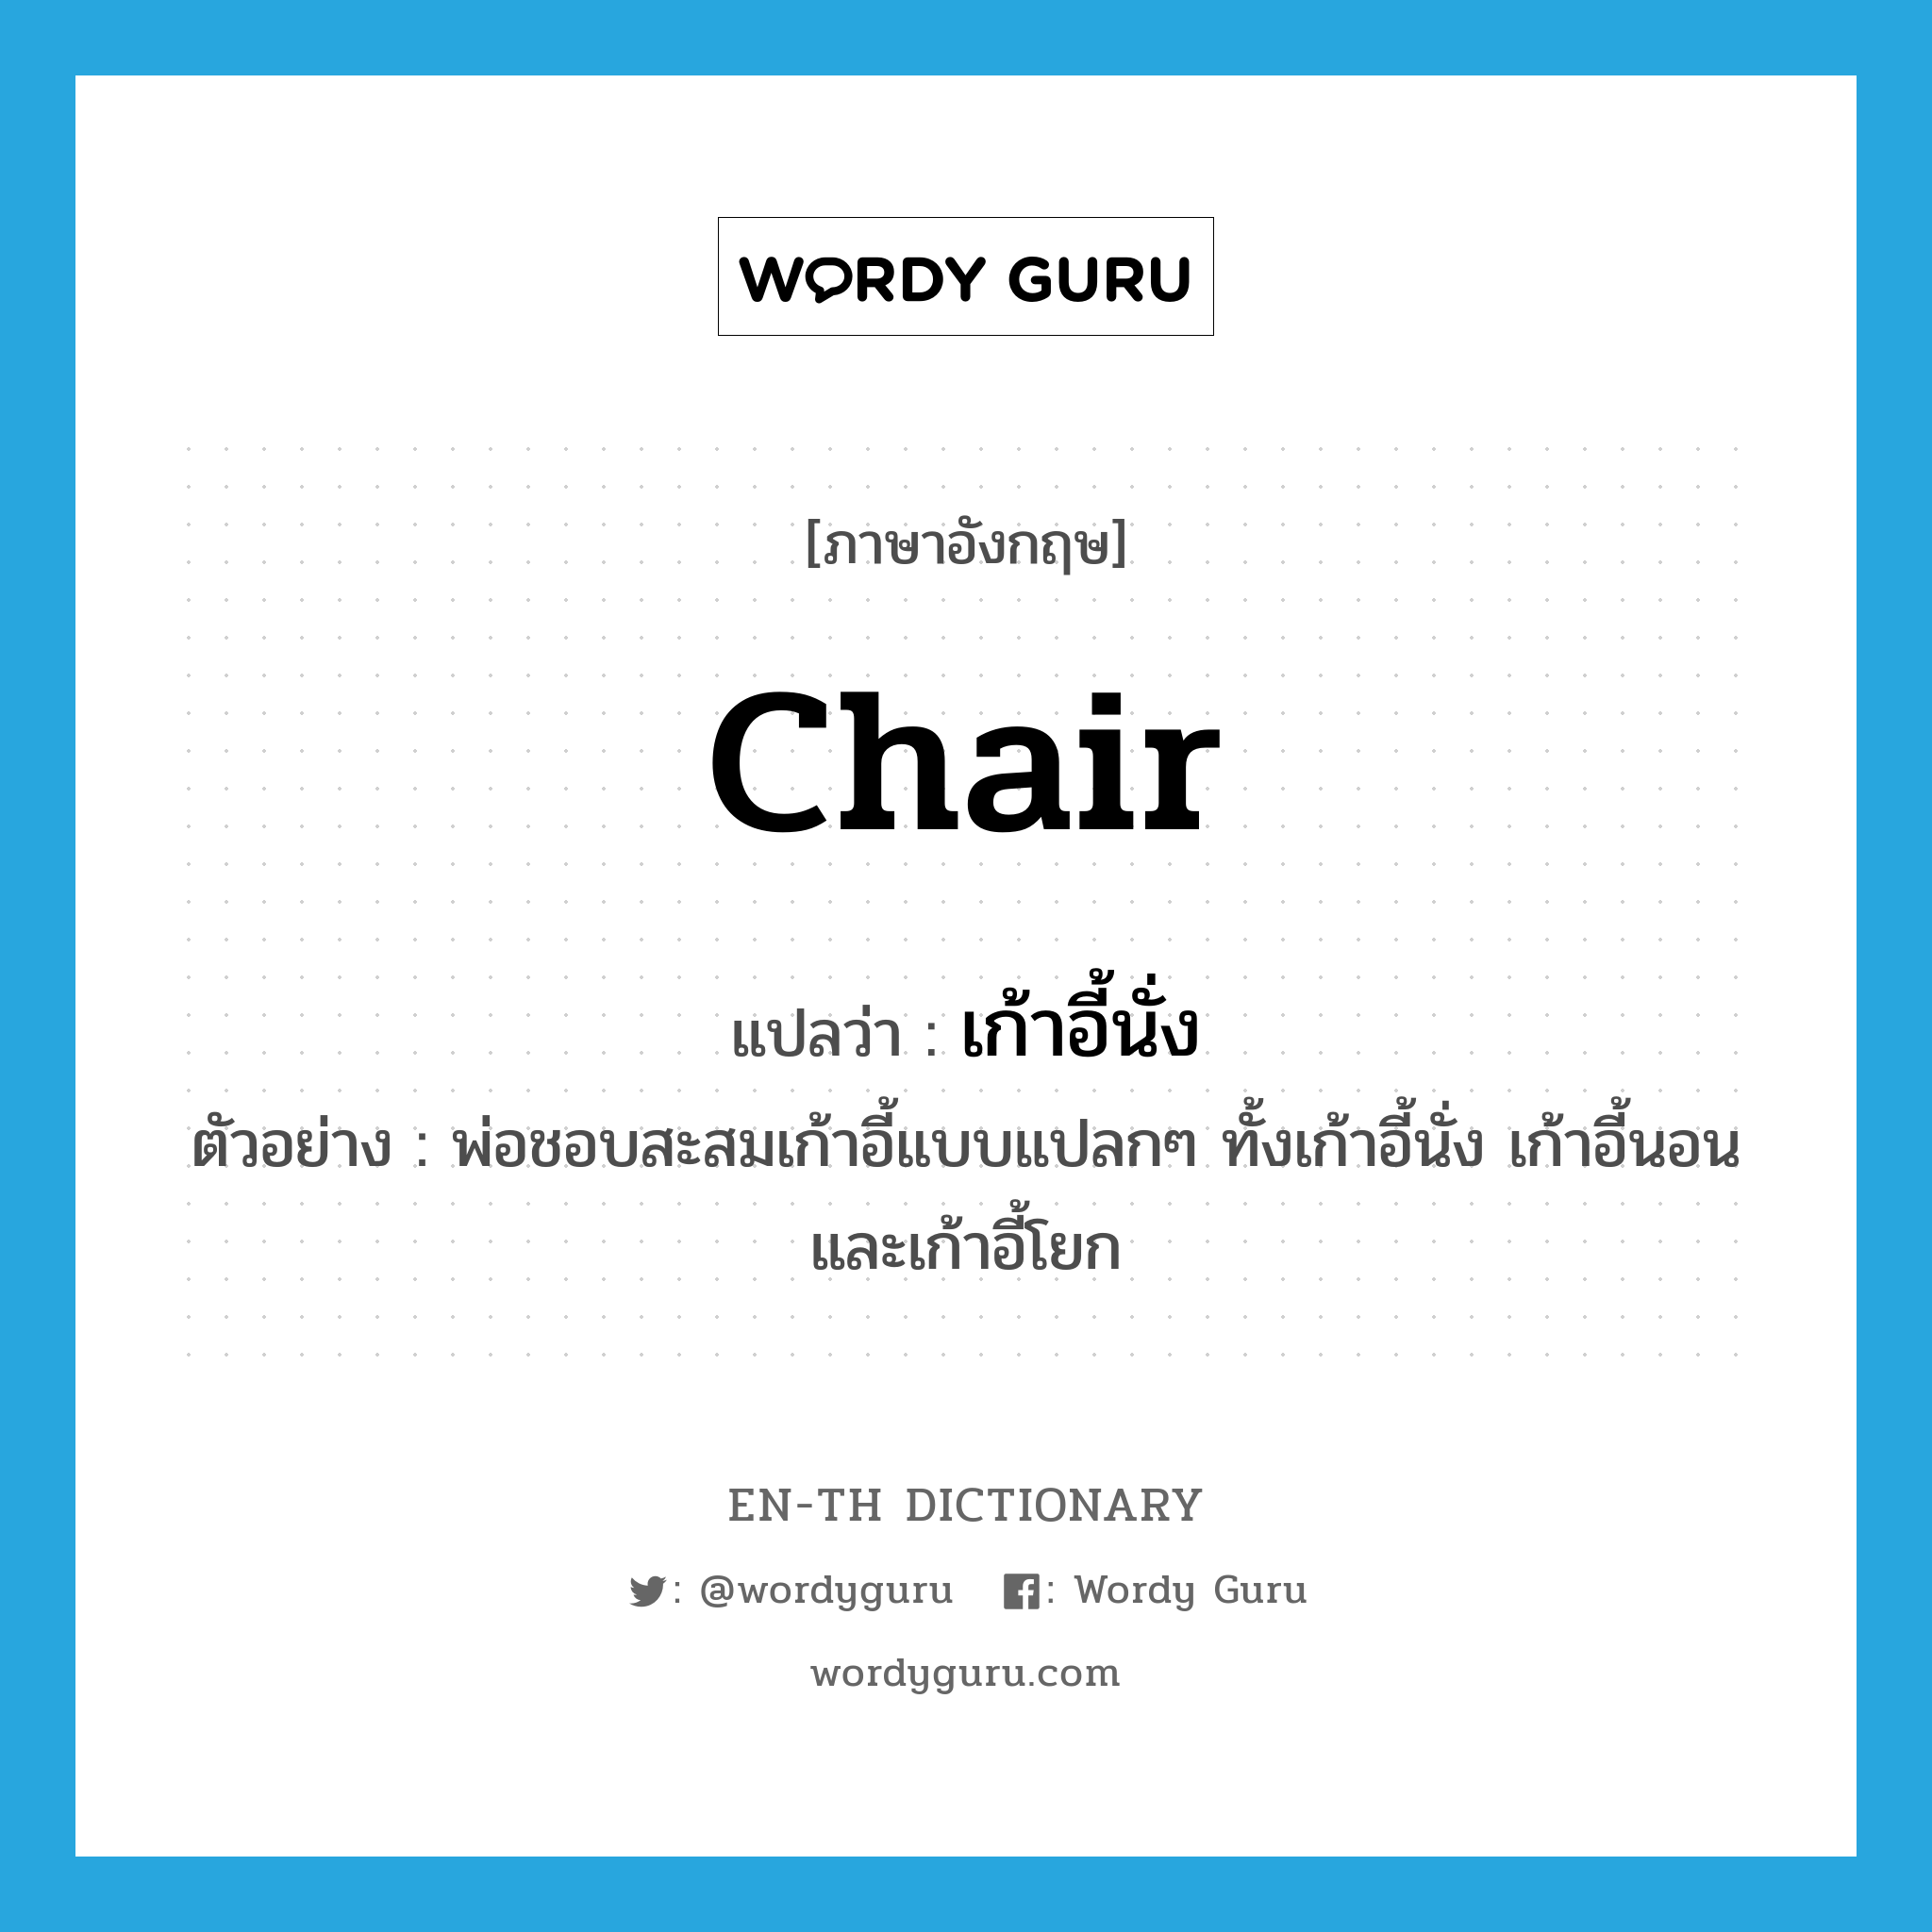 เก้าอี้นั่ง ภาษาอังกฤษ?, คำศัพท์ภาษาอังกฤษ เก้าอี้นั่ง แปลว่า chair ประเภท N ตัวอย่าง พ่อชอบสะสมเก้าอี้แบบแปลกๆ ทั้งเก้าอี้นั่ง เก้าอี้นอน และเก้าอี้โยก หมวด N